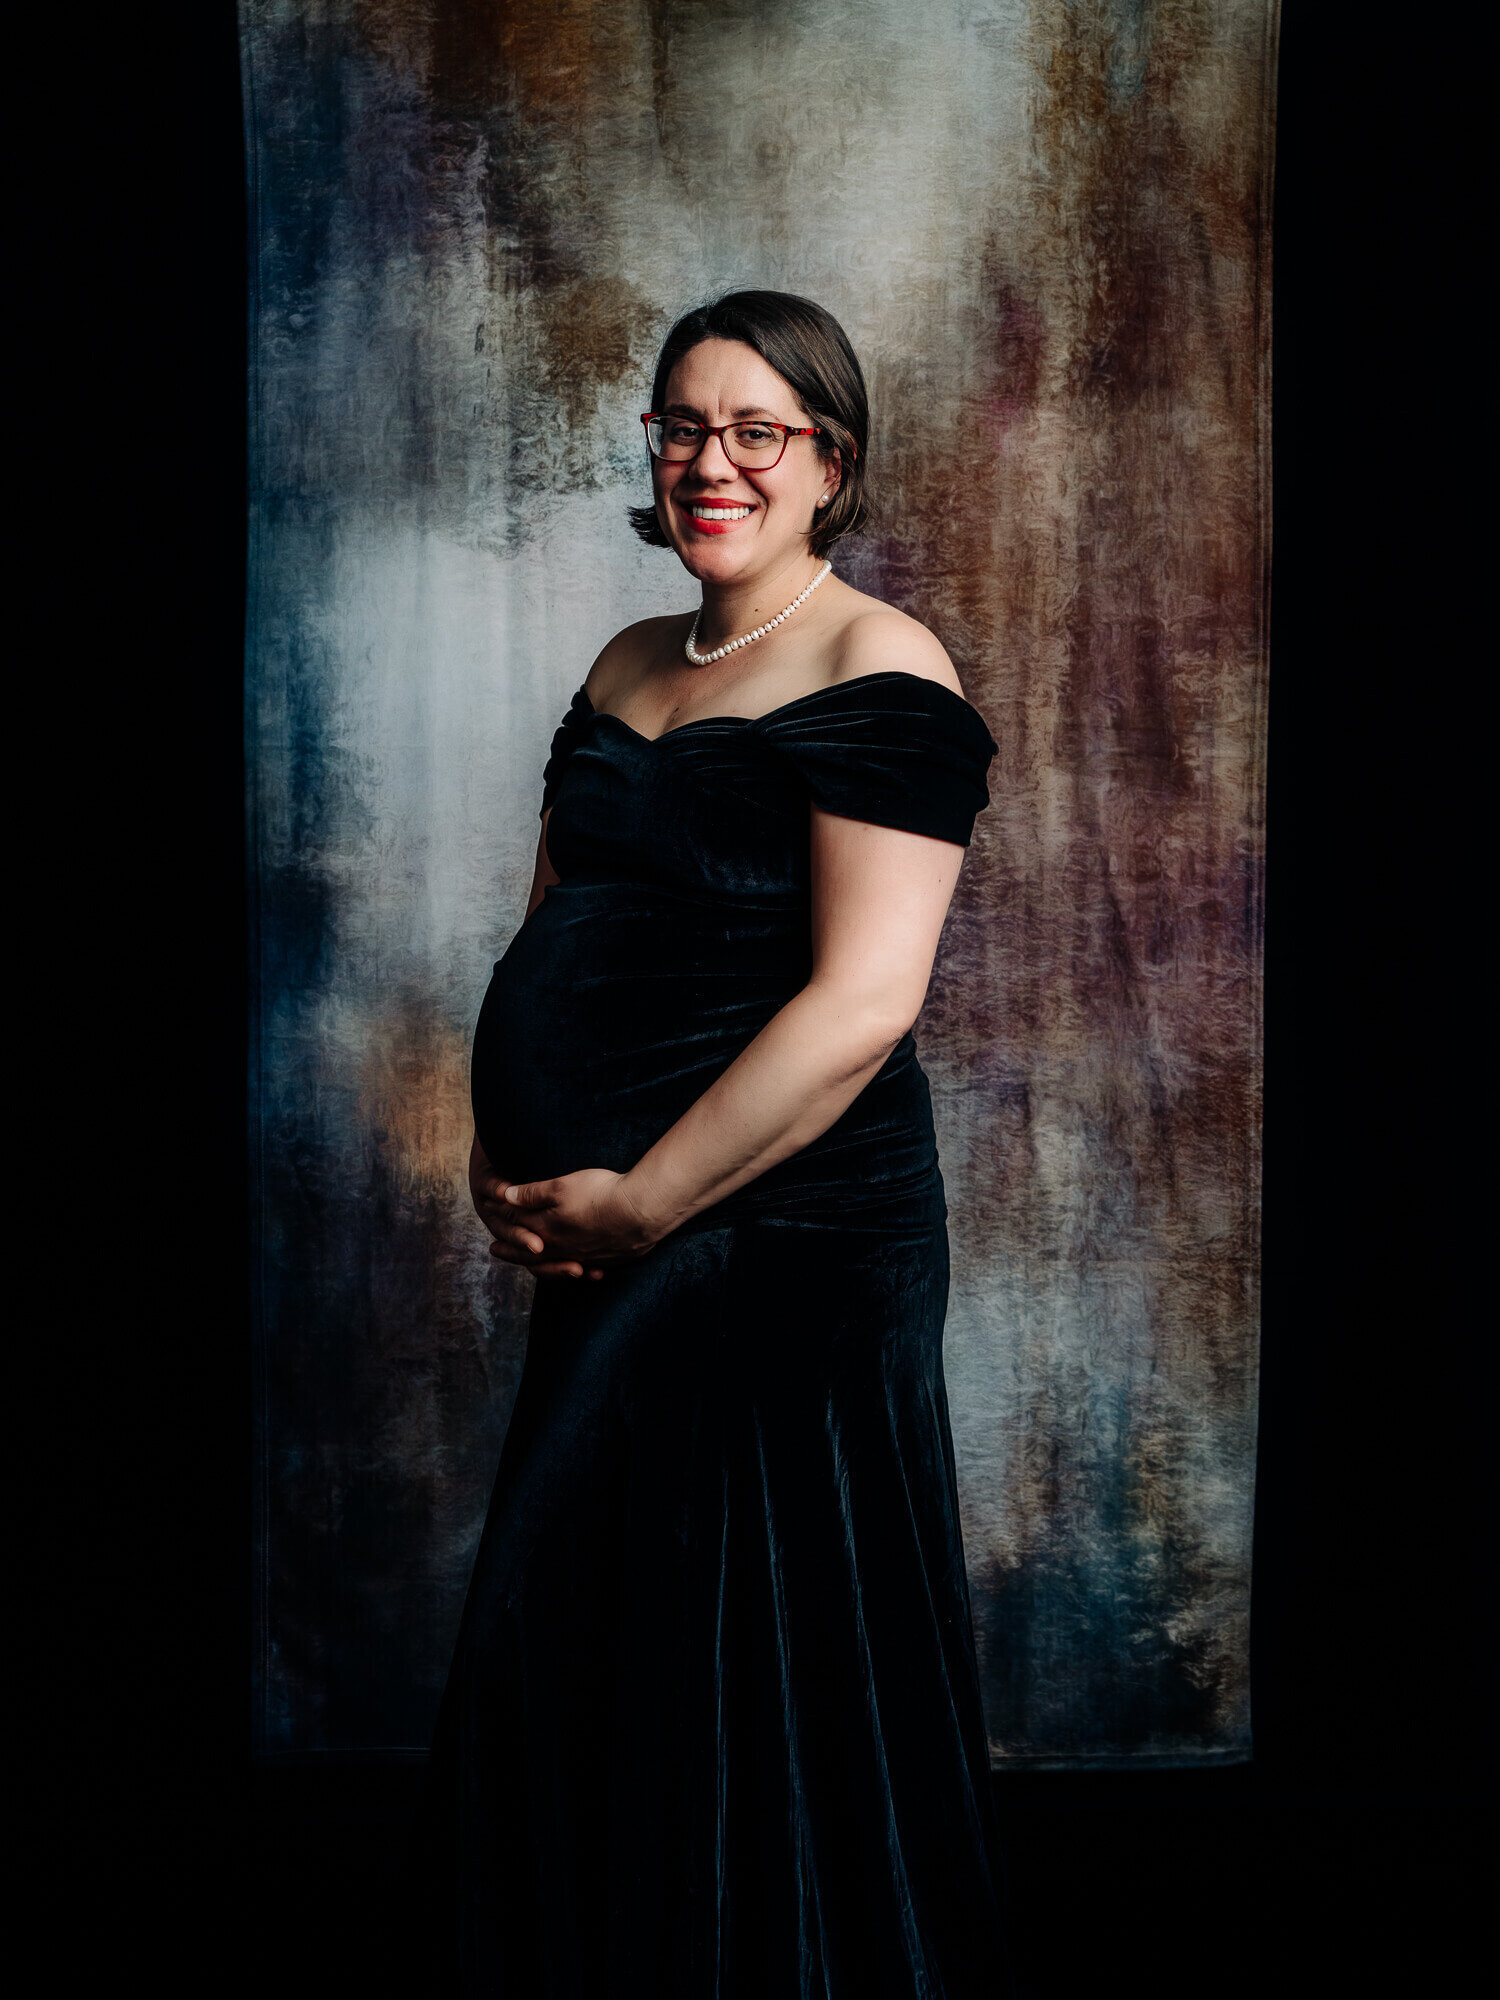 Prescott AZ maternity photographer shows new studio set